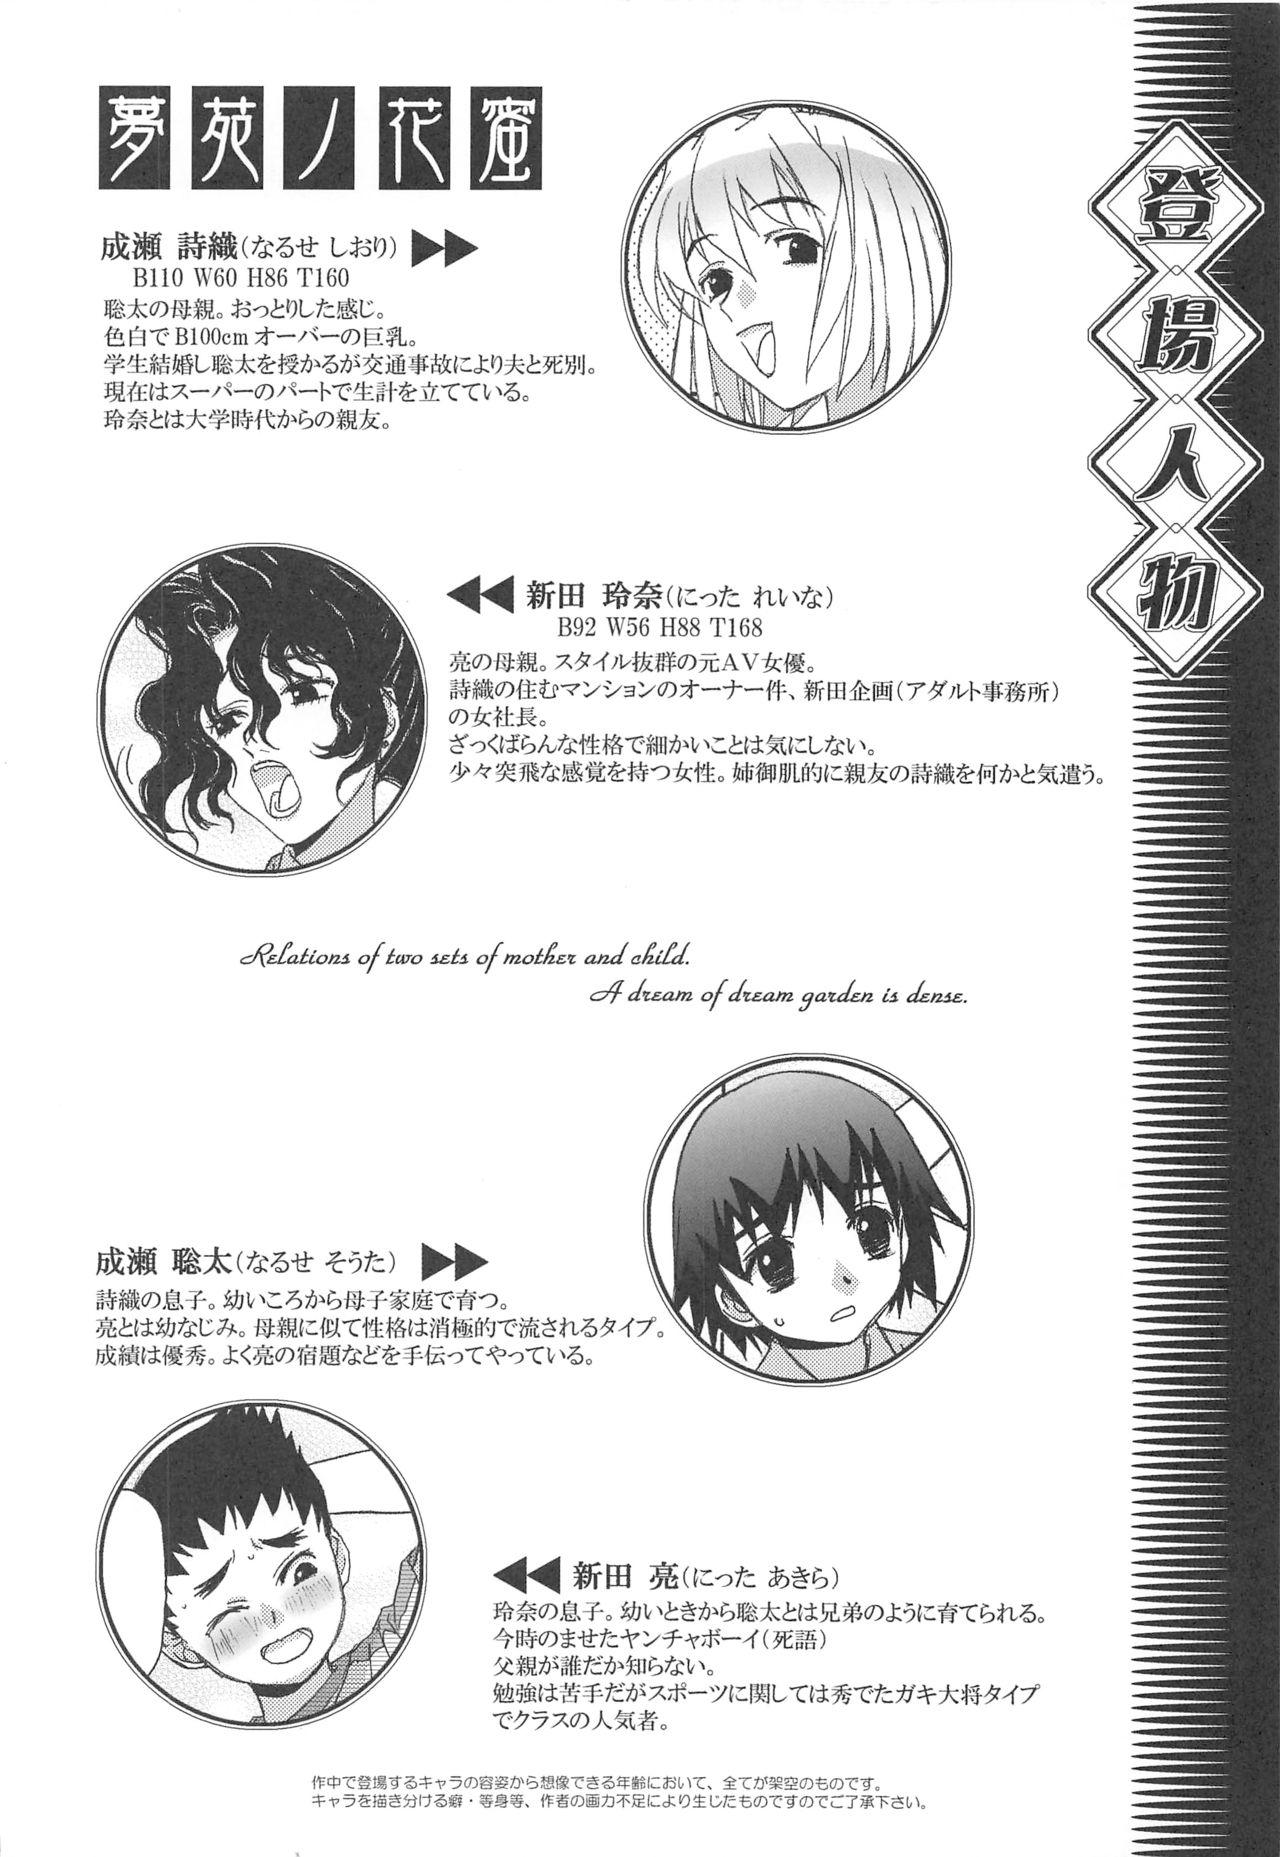 Soft (C70) [Otonano Do-wa (Takei Masaki)] Otonano Do-wa Vol. 17 Yumezono no Hanamitu ~Hatuga~ BOLUME 01 - Original Gets - Page 3